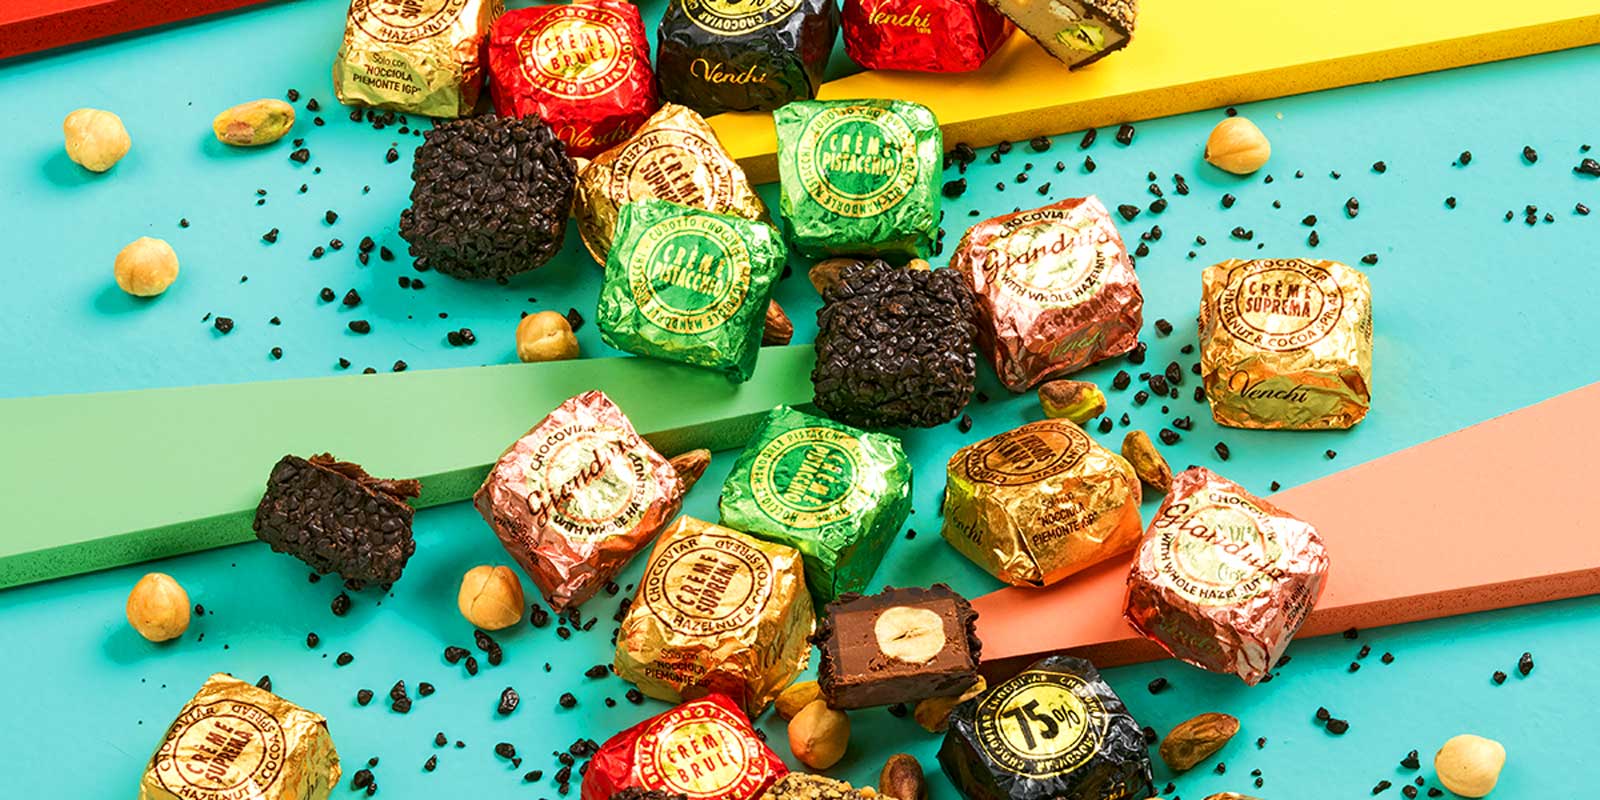 Venchi chokolader og praliner fra Piemonte Laekre, hjemmelavede og naturlige opskrifter designet til at hjaelpe dig med at nyde.
Siden 1878 har vi tilbudt oejeblikke af glaede hver dag i perfekt italiensk stil, vi taenker pa dit velbefindende.